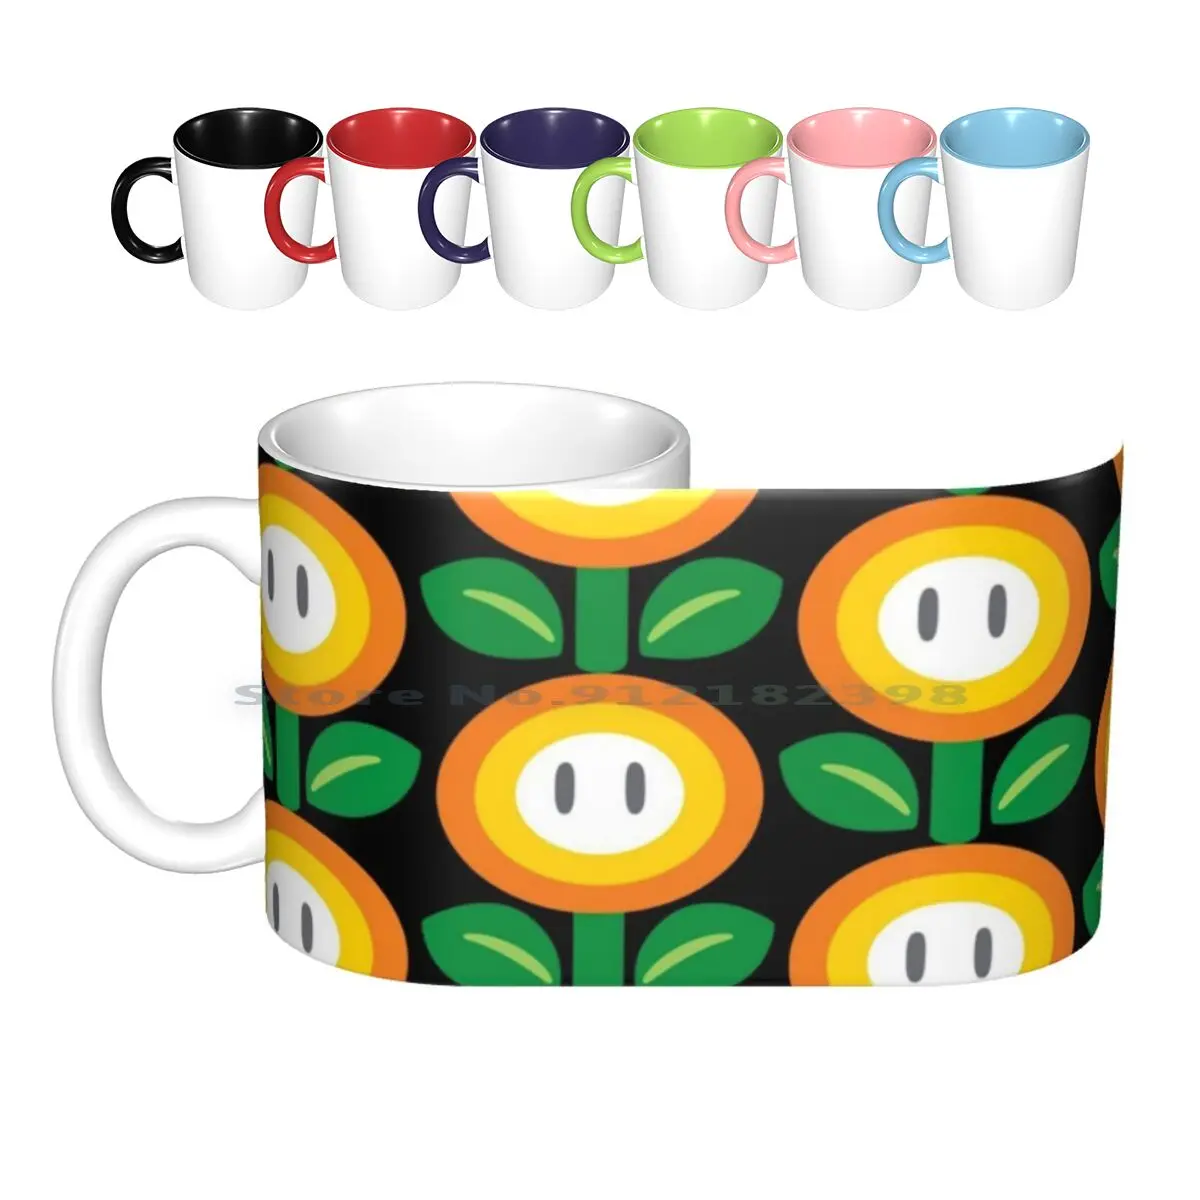 

Керамические кружки Flower Power, кофейные чашки, кружка для молока, чая, Цветочная чашка, суперкарта, 64 суперцепи, двойной приборный контроллер Wii...